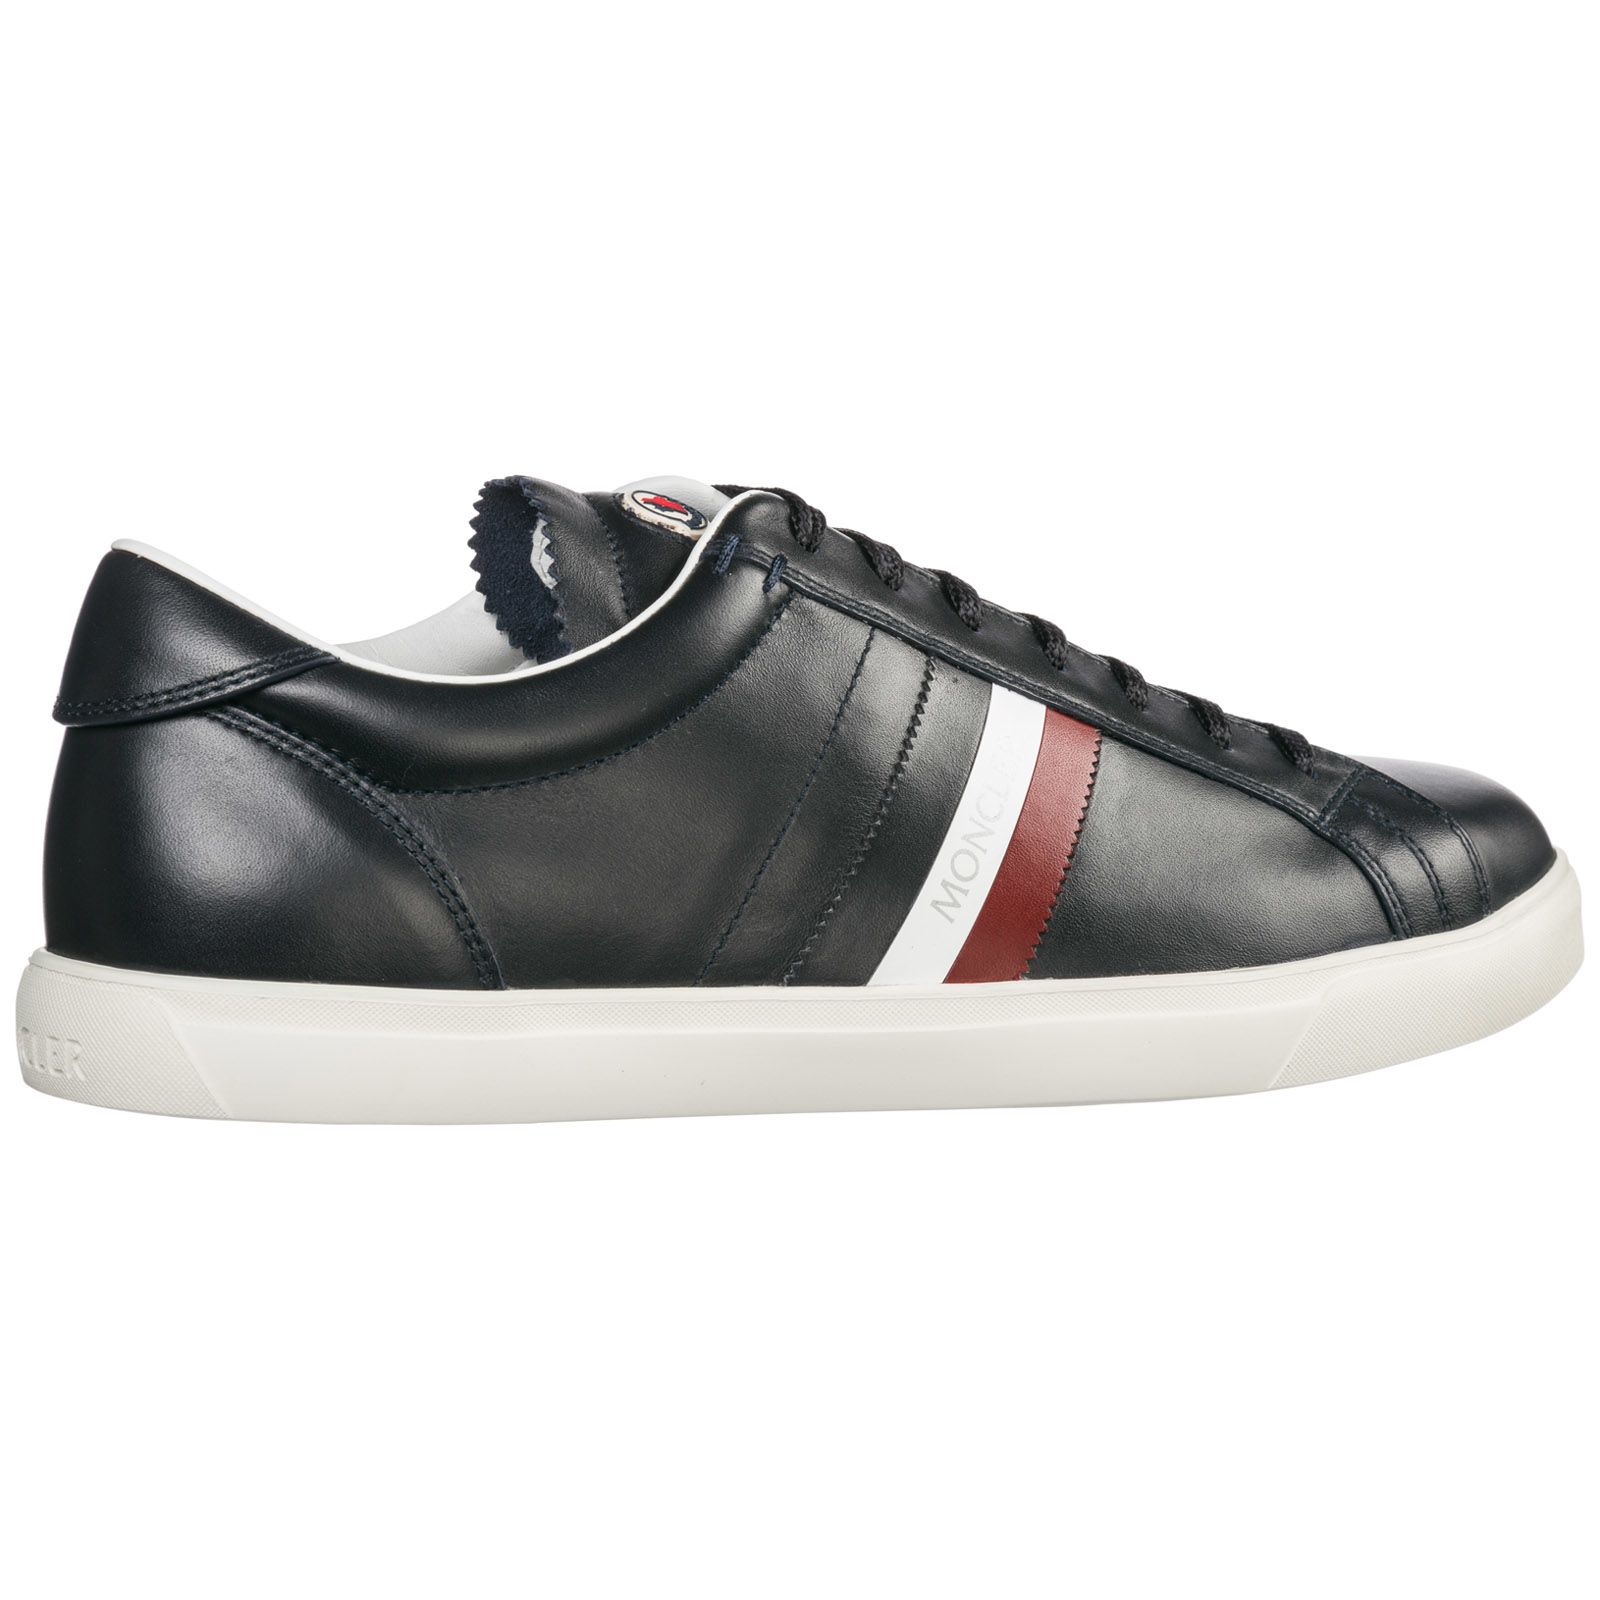 Moncler Moncler Shoes Leather Trainers Sneakers La Monaco - Blue ...